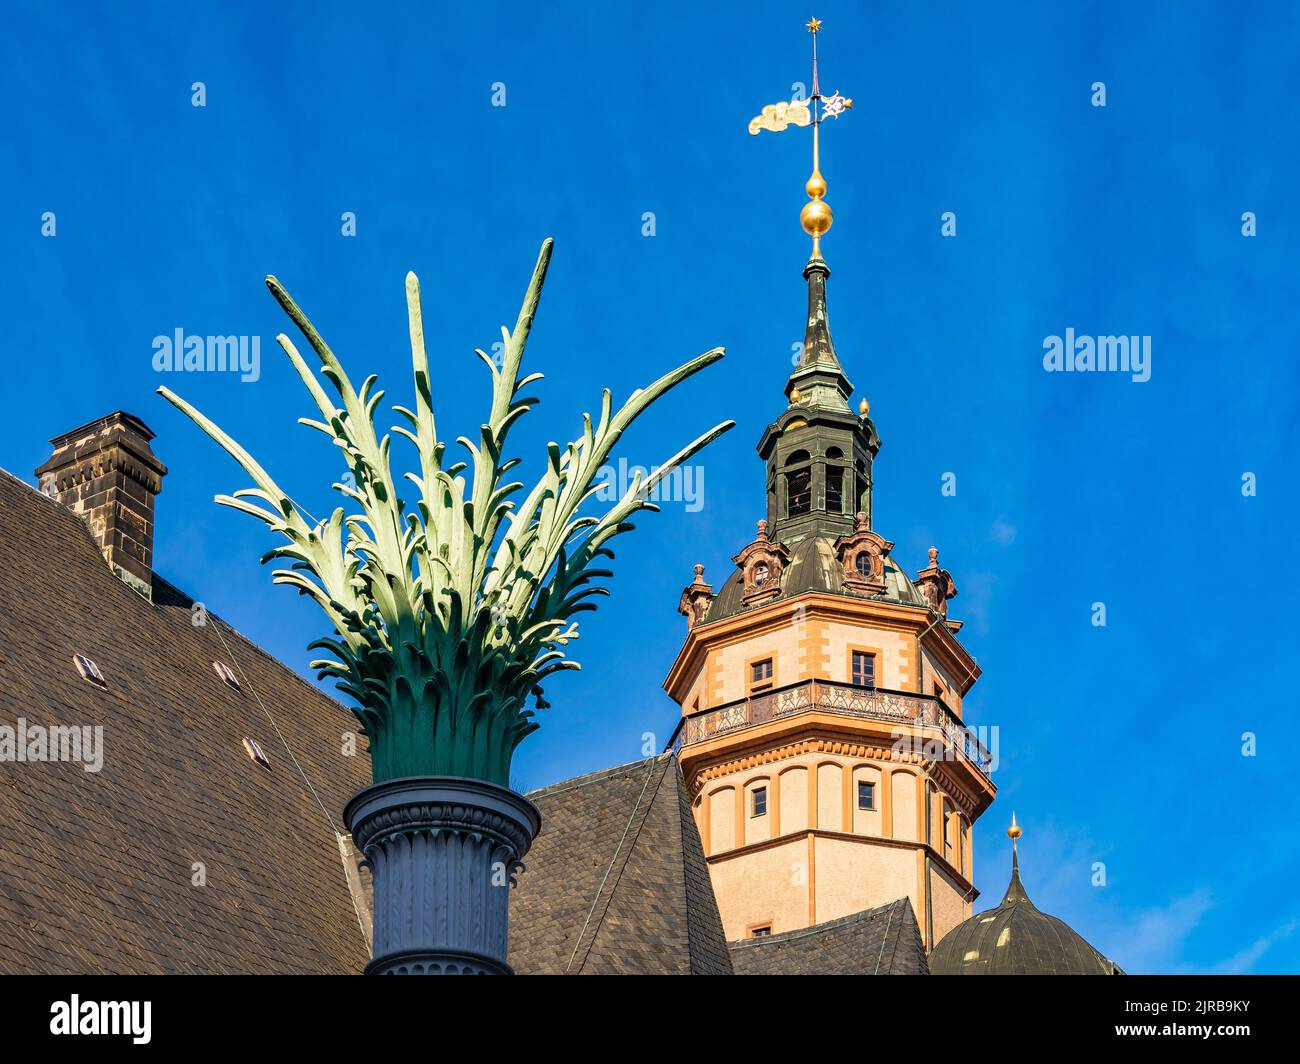 Deutschland, Sachsen, Leipzig, Nikolaisaule-Säule mit Turm der Nikolaikirche im Hintergrund Stockfoto